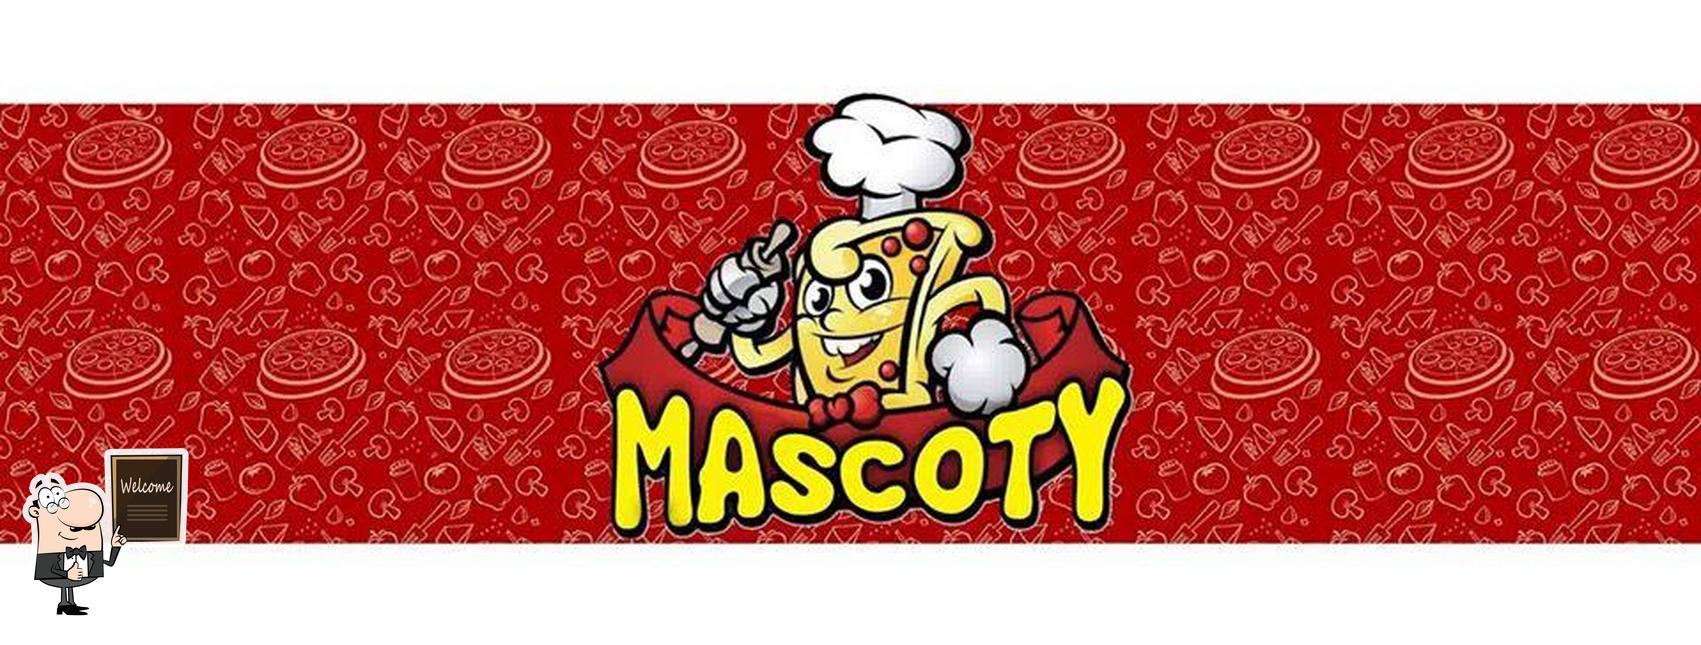 Mascoty Pizzas Fritas image